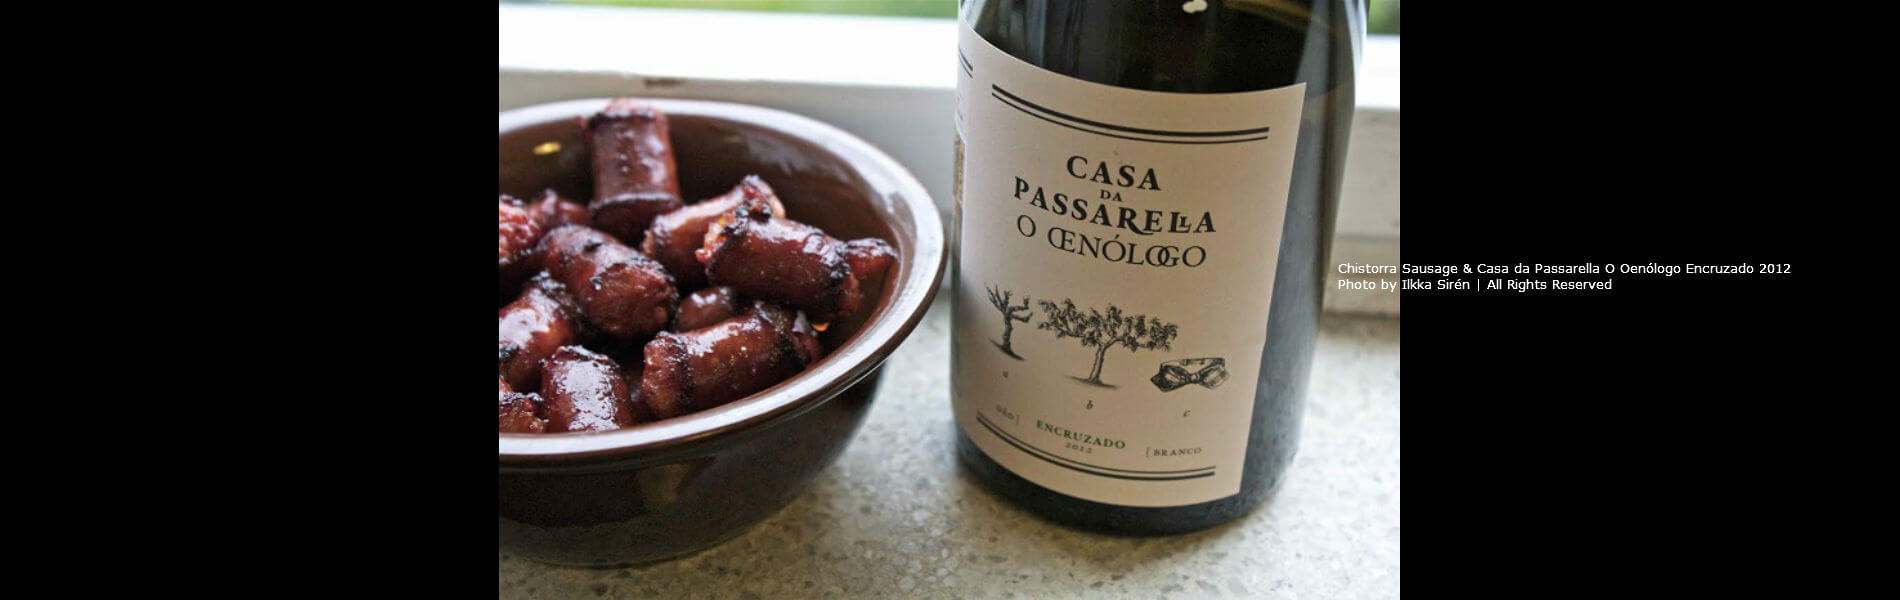 Blend-All-About-Wine-Casa-da-Passarela-Encruzado-2012